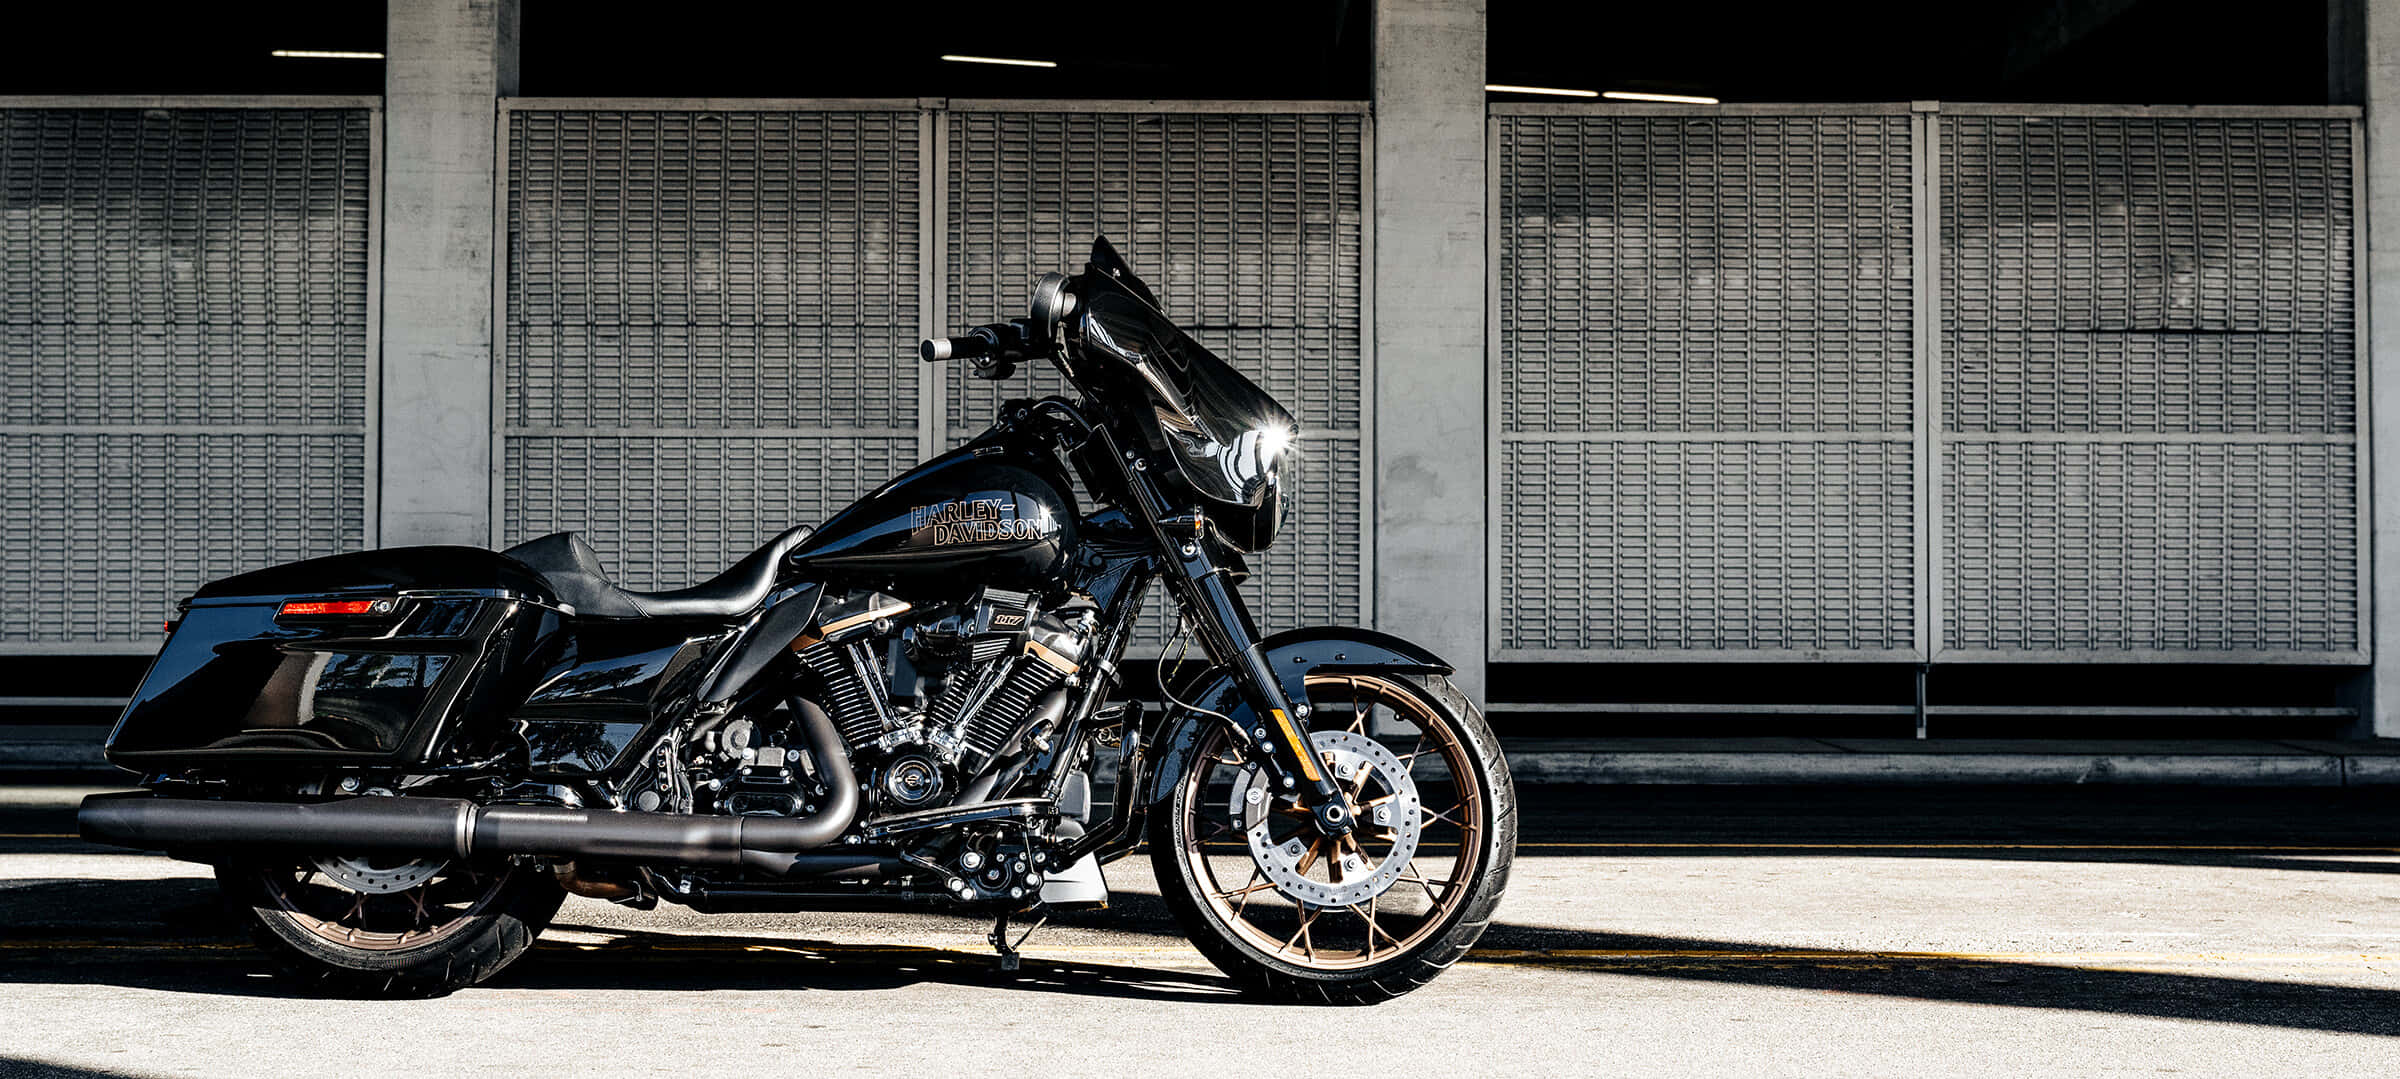 Njutav Den Öppna Vägen Med En Harley-davidson Motorcykel